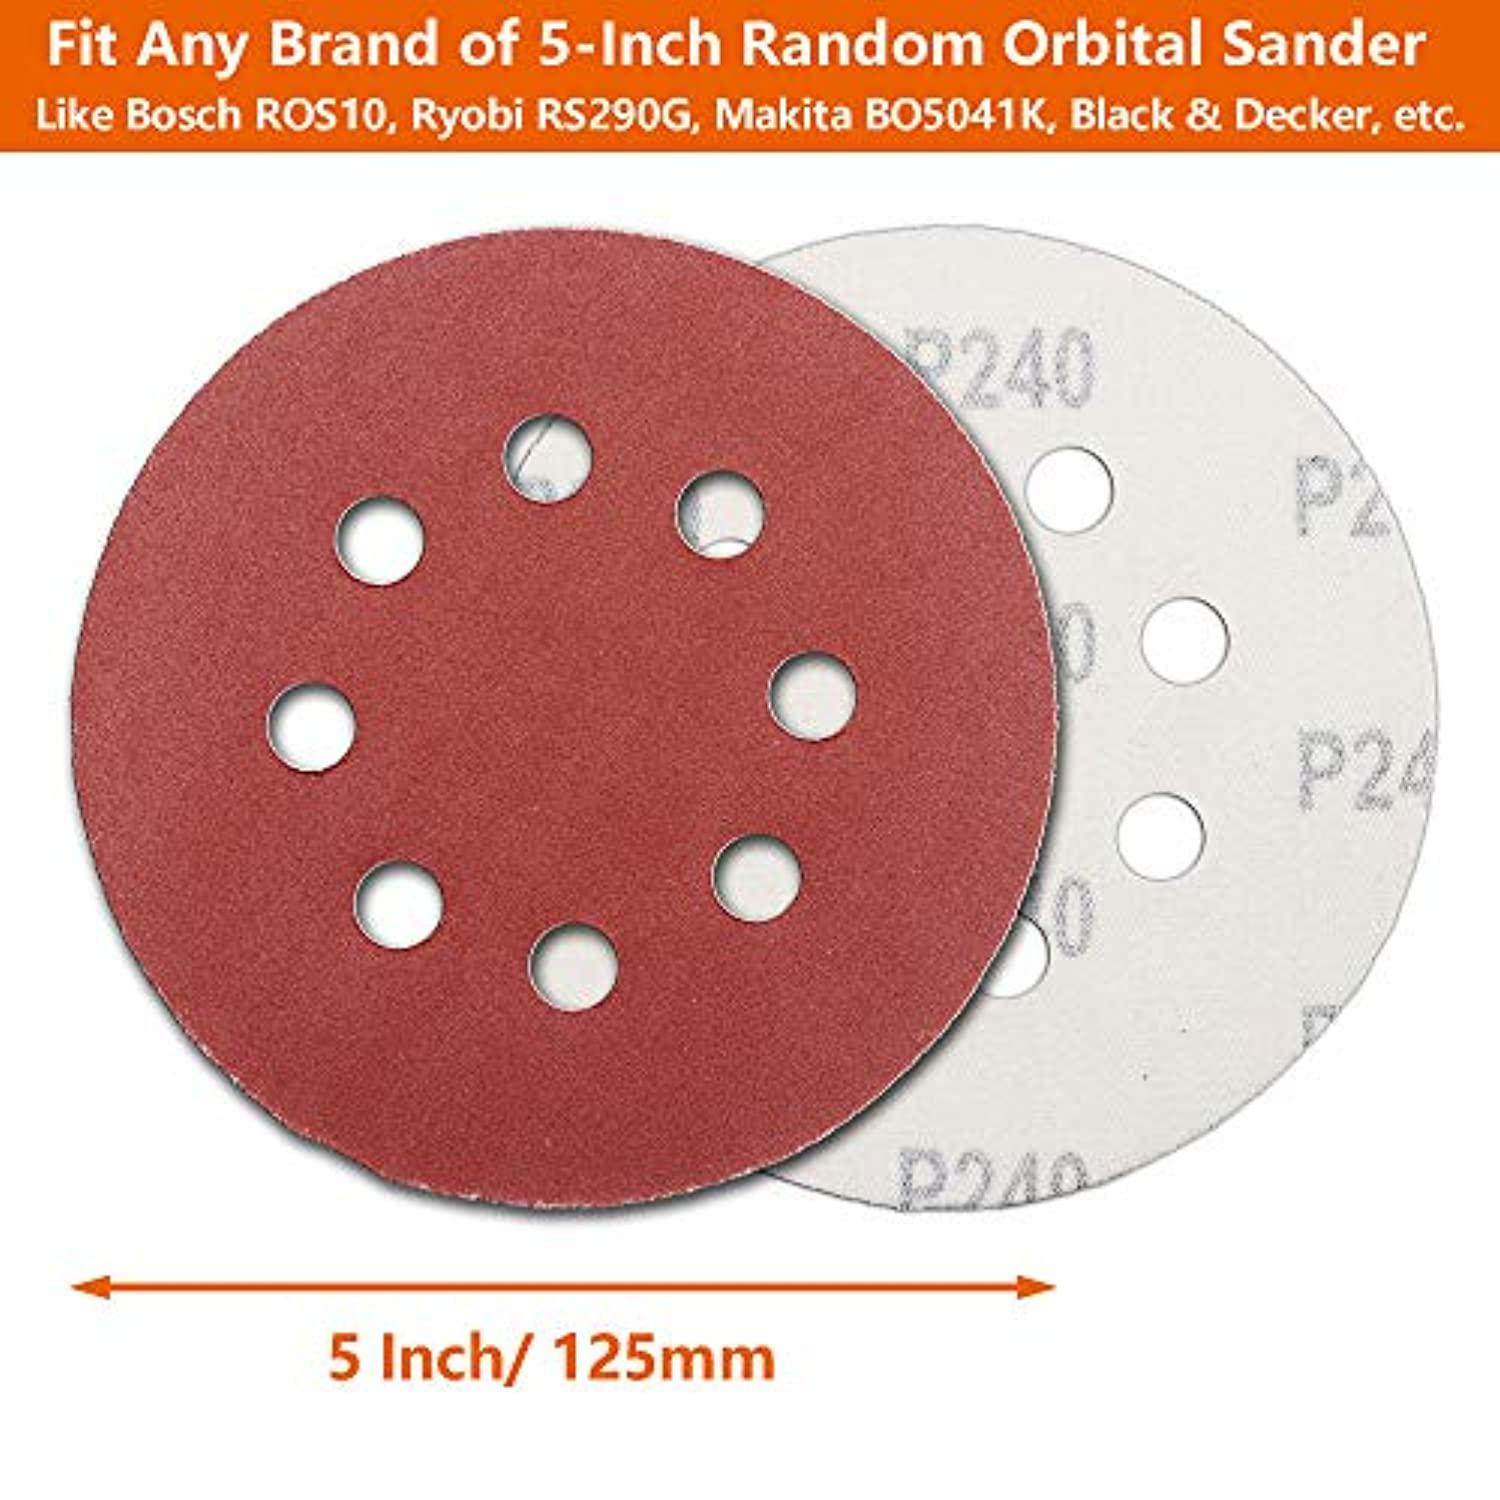 FRIMOONY 60pcs sanding discs 5 inch 8 holes, 1000/800/600/400/320/240 grit sandpaper for random orbital sander